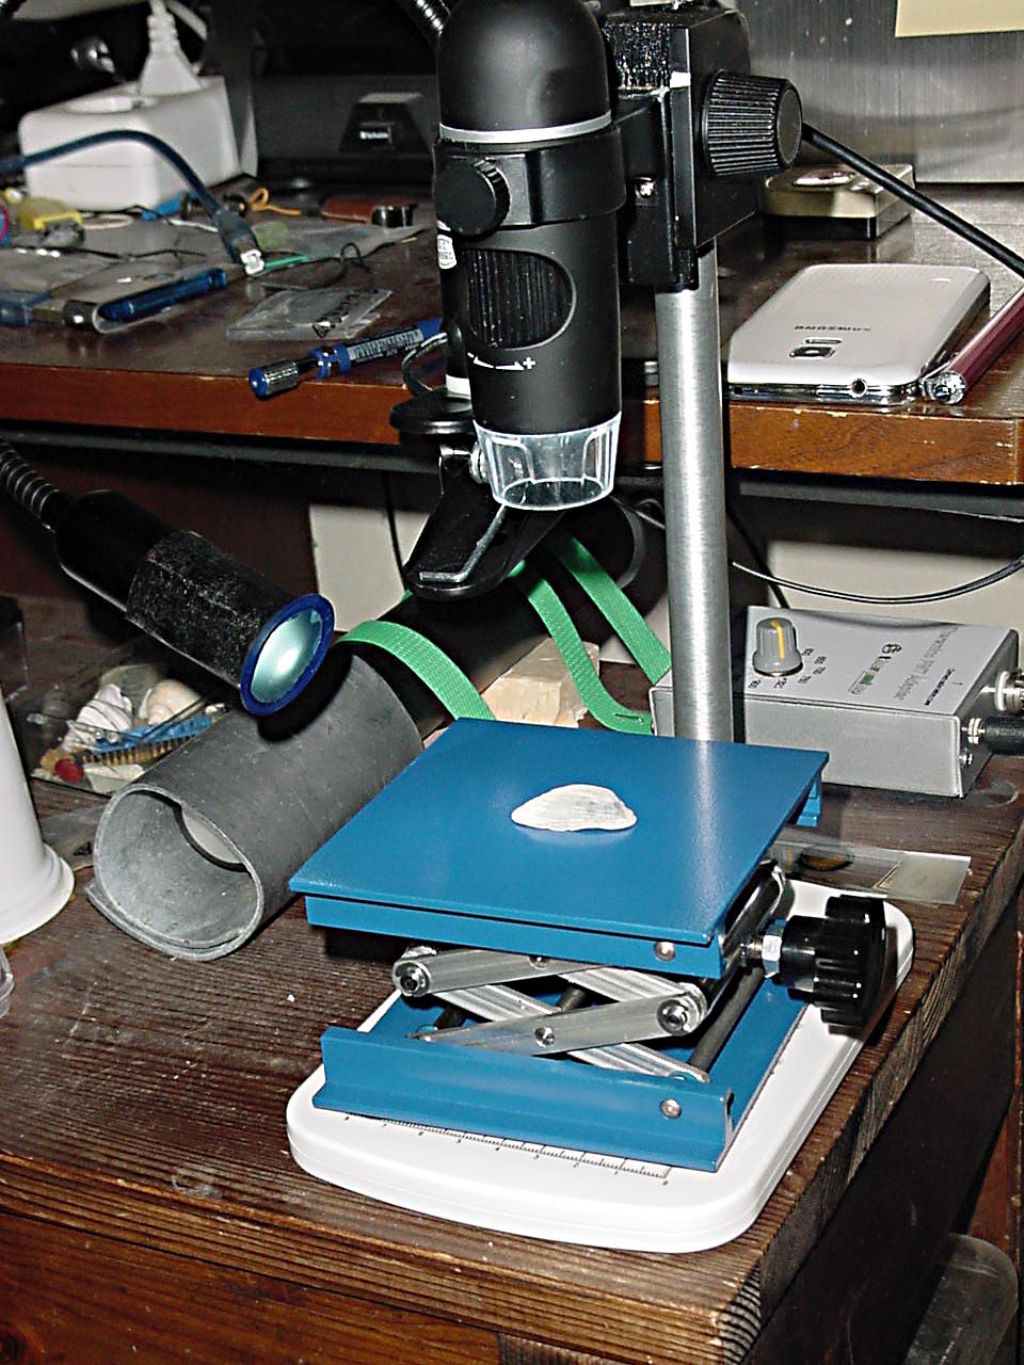 Microscopia per studenti